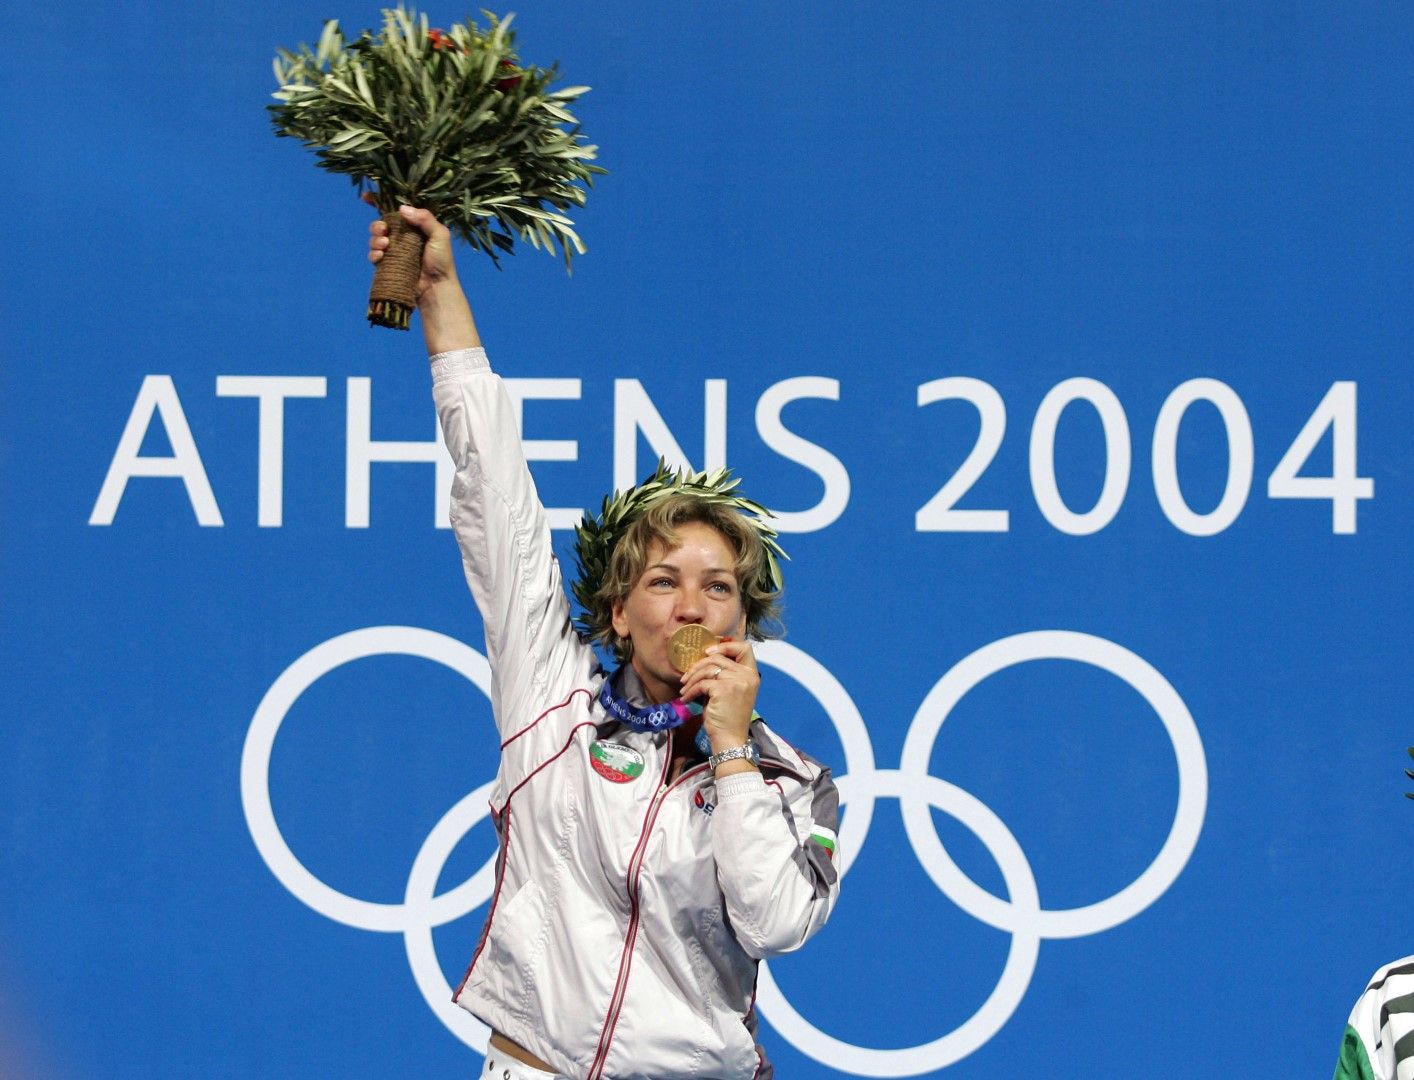 Мария Гроздева е двукратен олимпийски шампион от Игрите в Сидни (2000) и Атина (2004) и трикратен бронзов медалист в спортната стрелба.